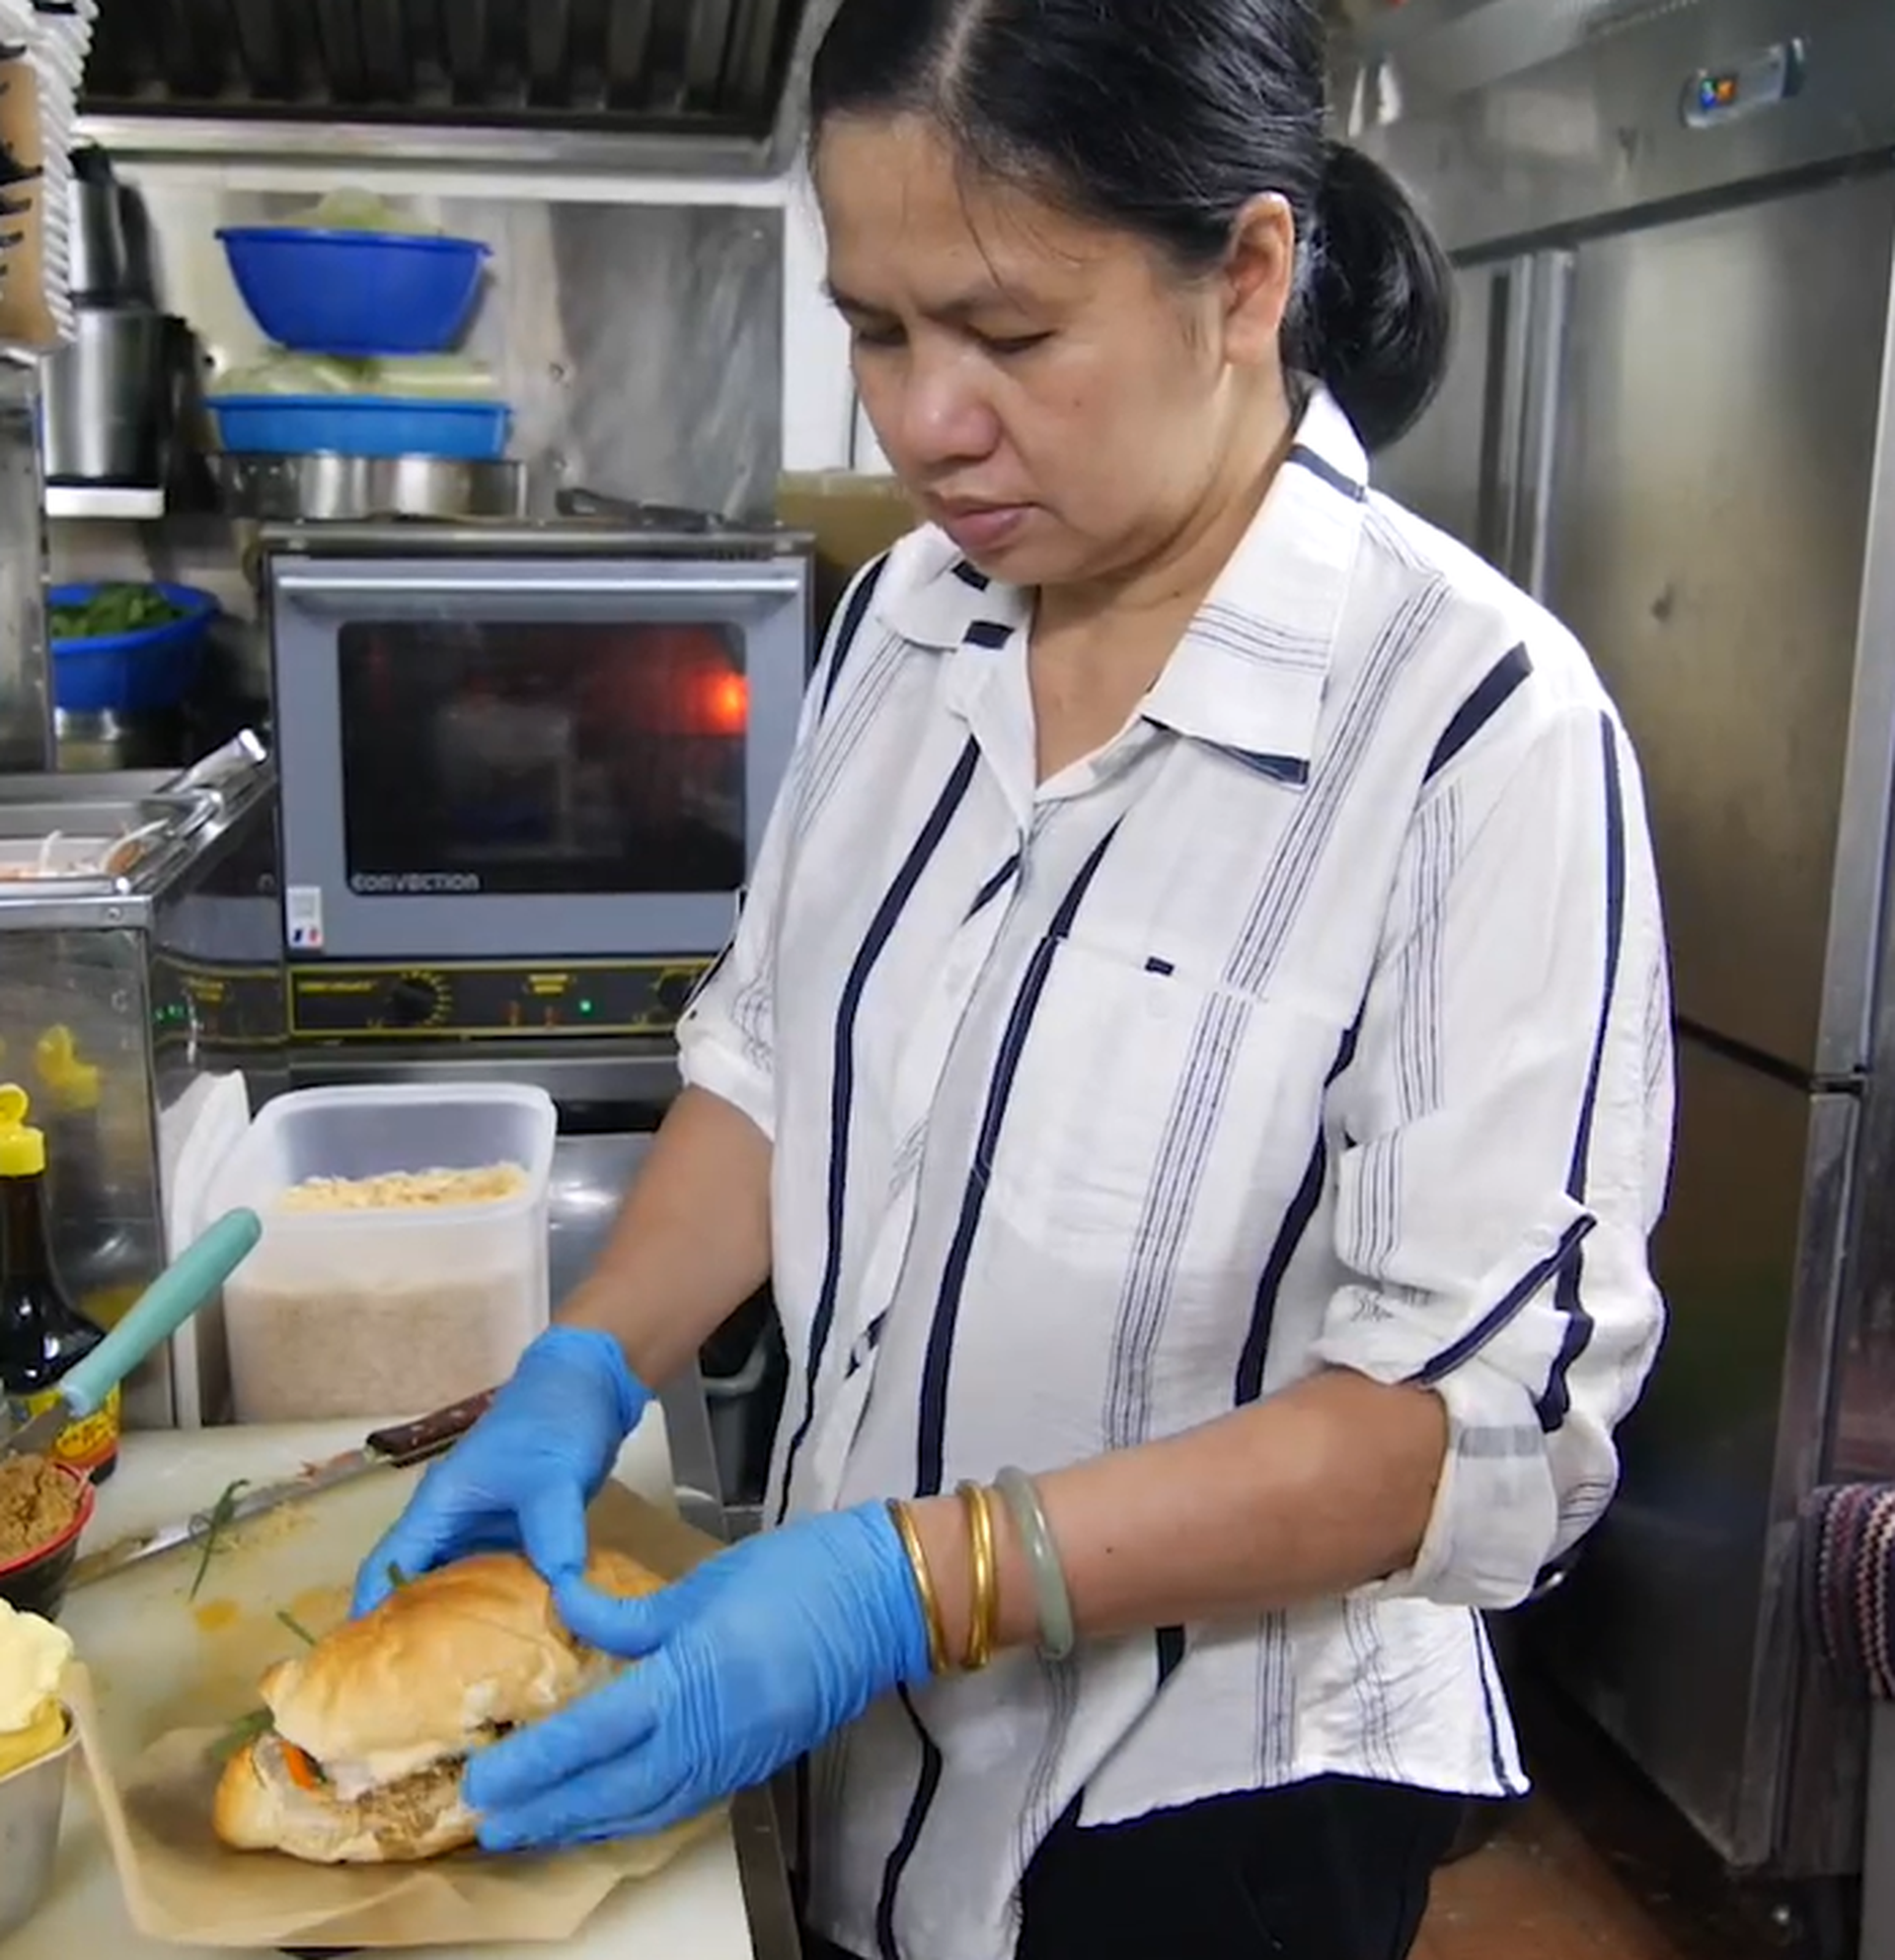 Bán bánh mì, bún bò ở Hồng Kông, người phụ nữ gốc Việt thu 100 triệu/ngày - 2